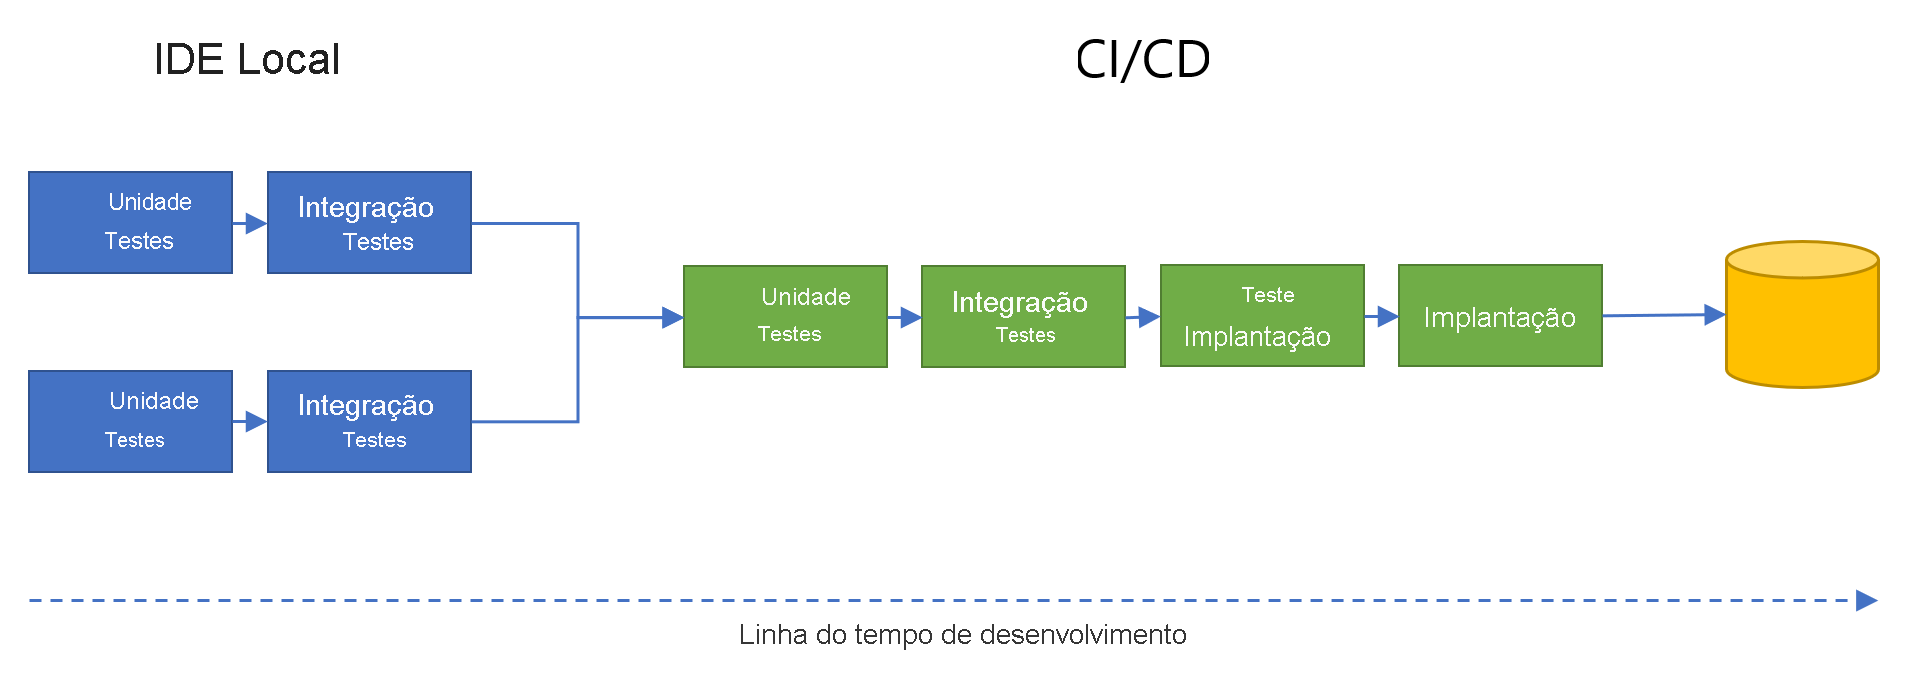 Diagrama a mostrar testes de unidades paralelas e testes de integração em IDEs locais, a intercalar no fluxo de desenvolvimento CI/CD com testes de unidades, testes de integração, implementação de teste e implementação final.